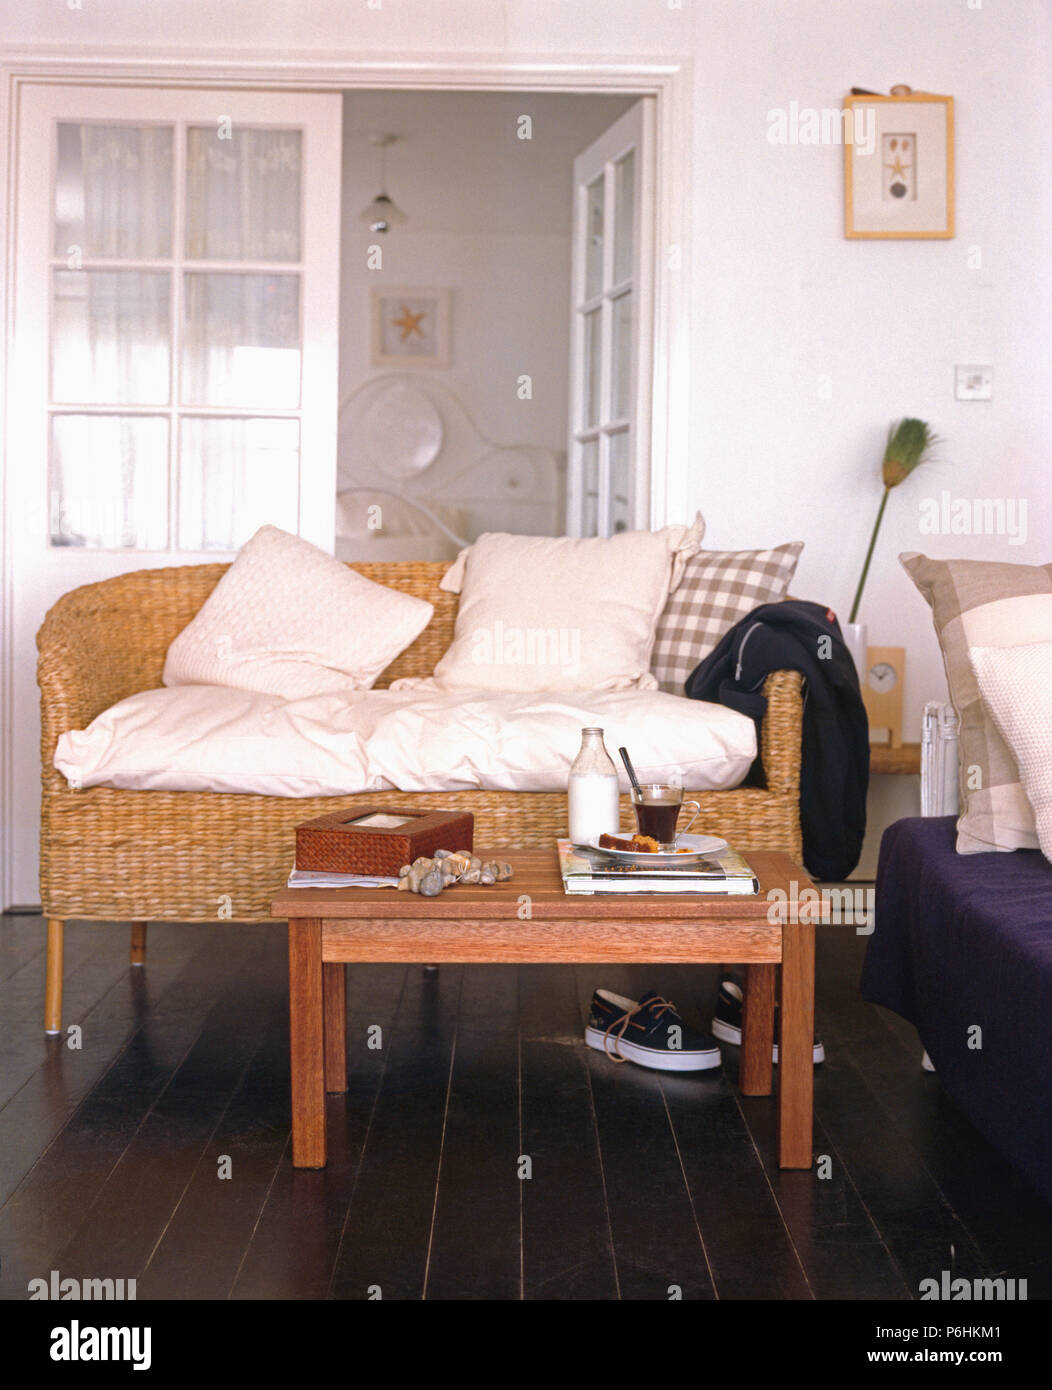 Smple caffè in legno tavolo e divani in vimini con cuscini color crema in piccoli cottage soggiorno con dipinta di nero floorbboards Foto Stock